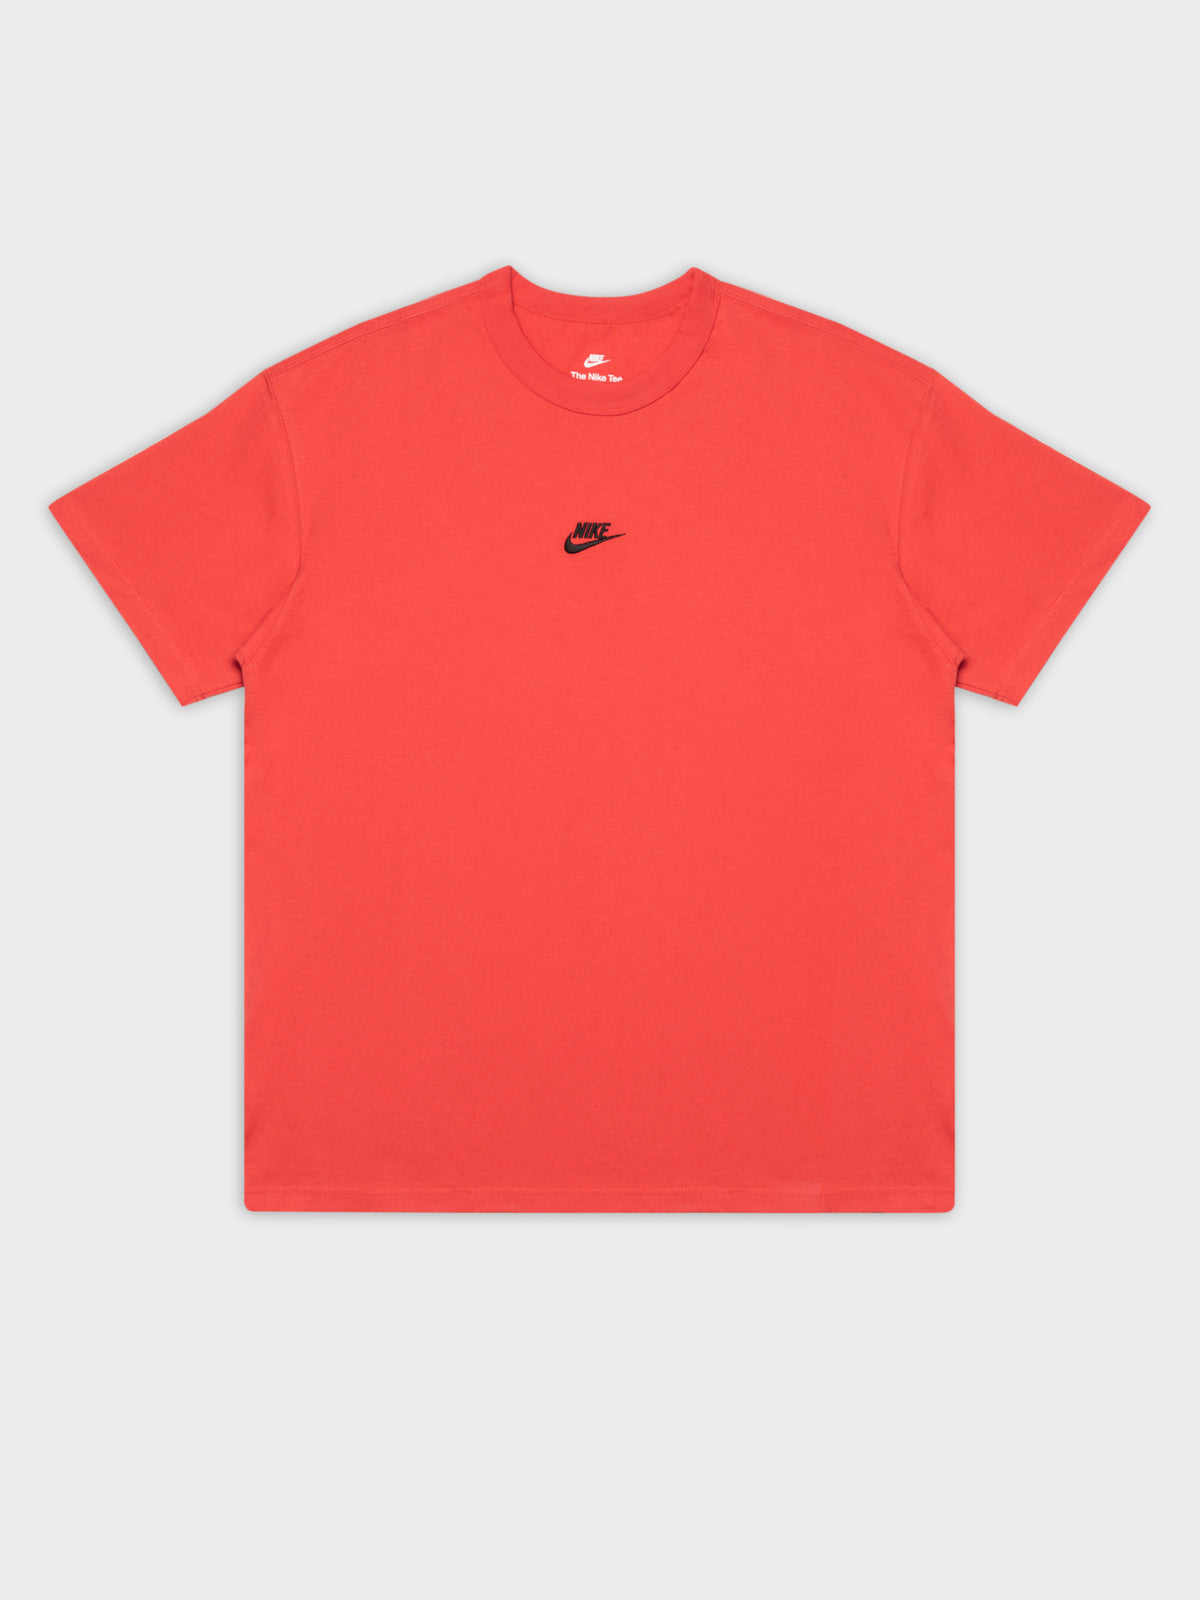 Premium Essential T-Shirt in Lobster Orange